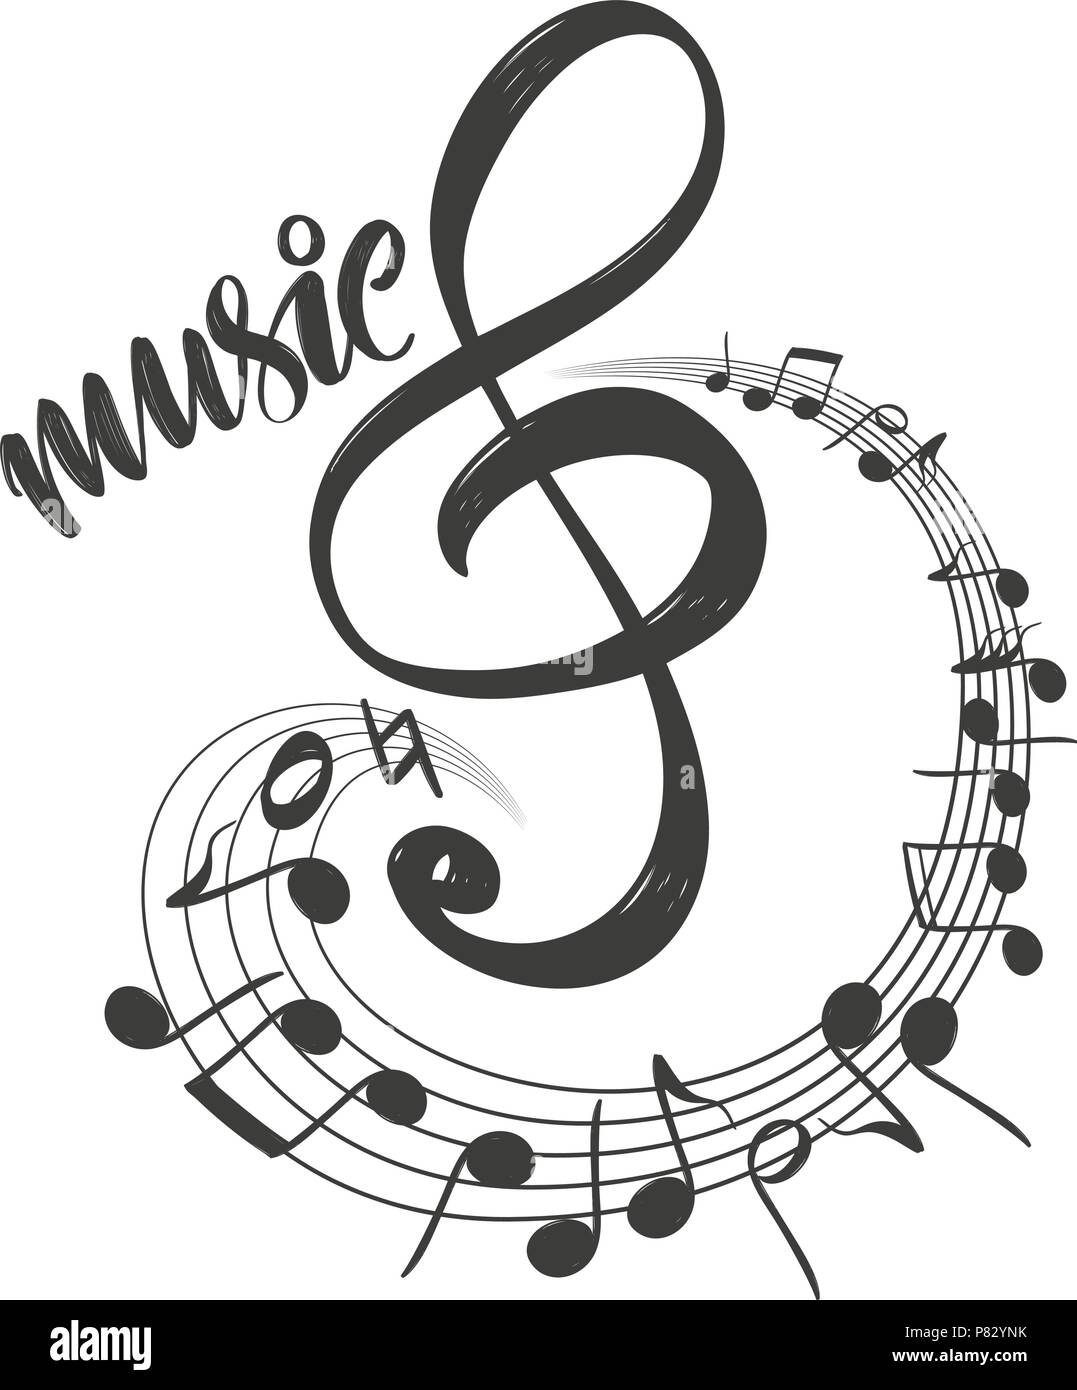 L'icône des notes de musique, aime la musique, texte calligraphie hand drawn vector illustration croquis Illustration de Vecteur